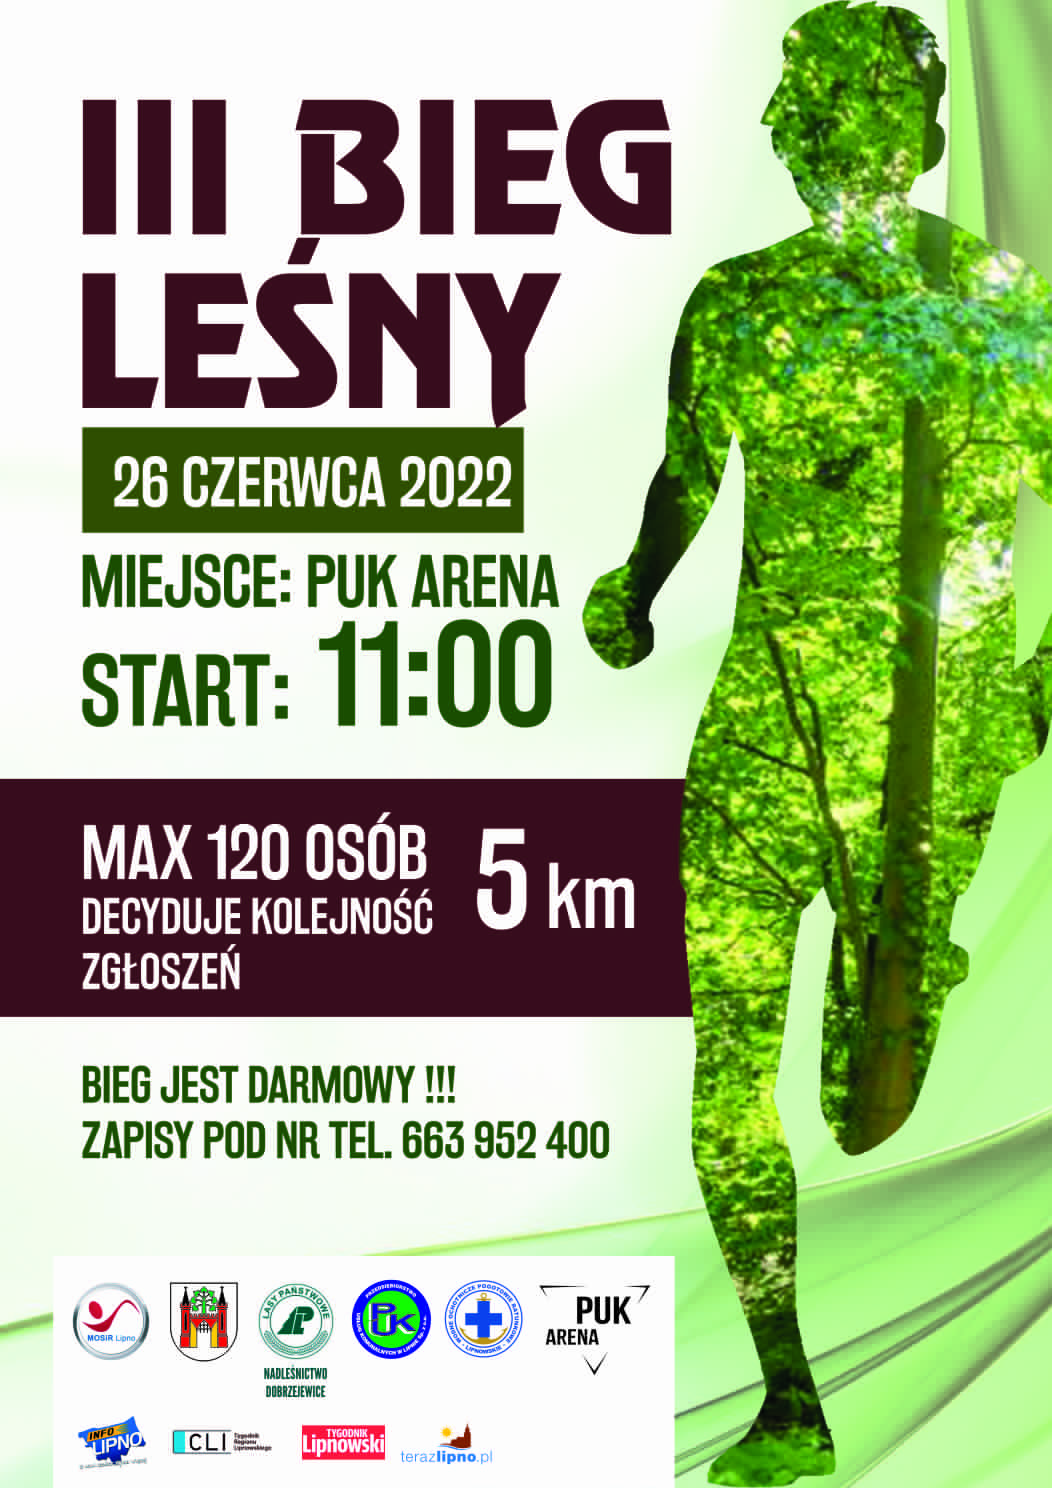 Plakat imprezy III Bieg Leśny - treść plakatu zamieszczona w informacji o biegu